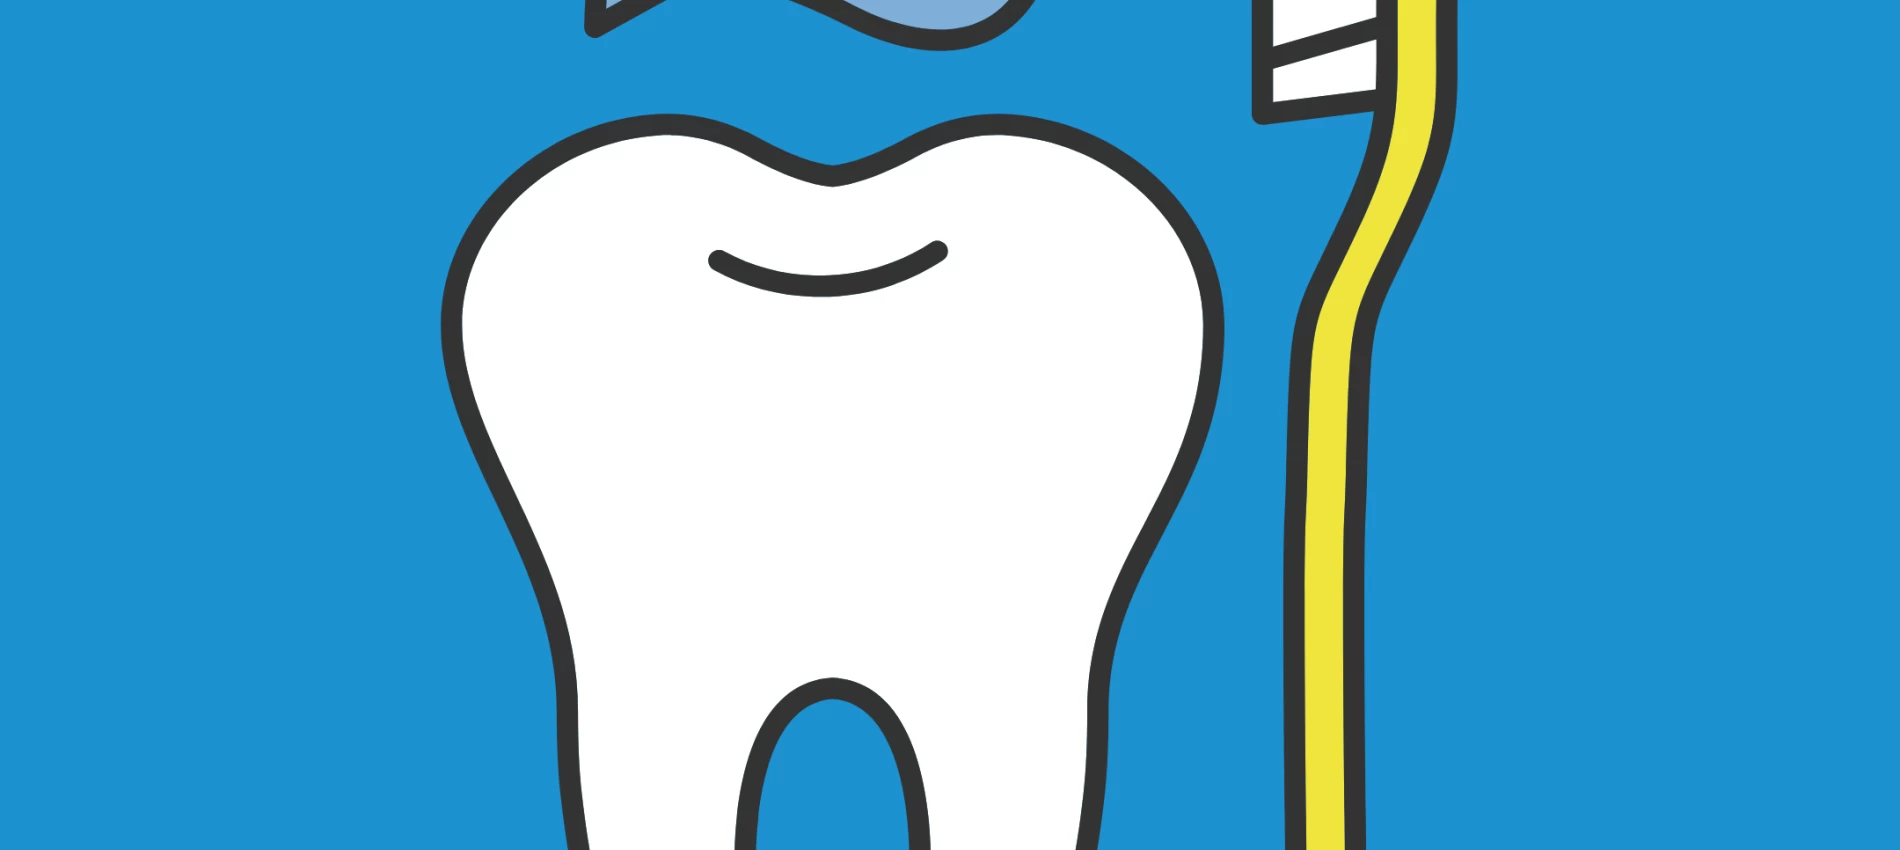 Cum se realizeaza un periaj dentar corect? Tehnici recomandate